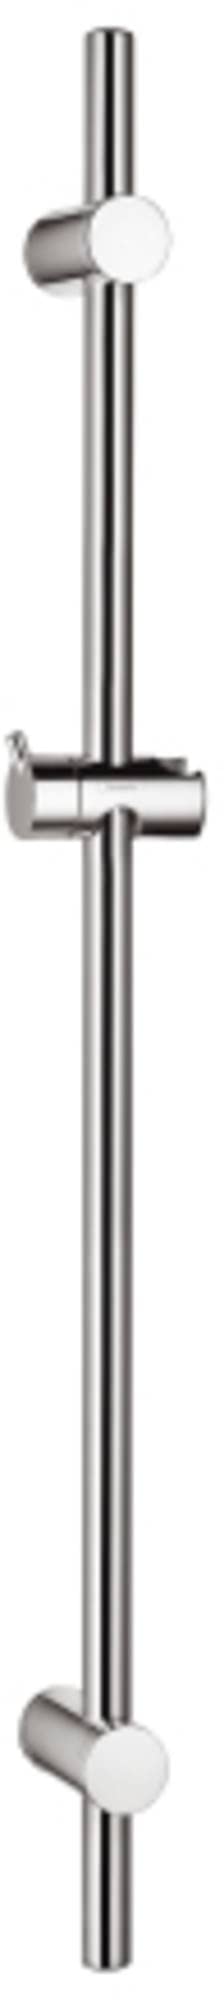 hansgrohe Unica - Duschstange 72cm, Brausestange mit verstellbarer Duschkopfhalterung, variabler Bohrlochabstand: 400 - 670 mm, Chrom